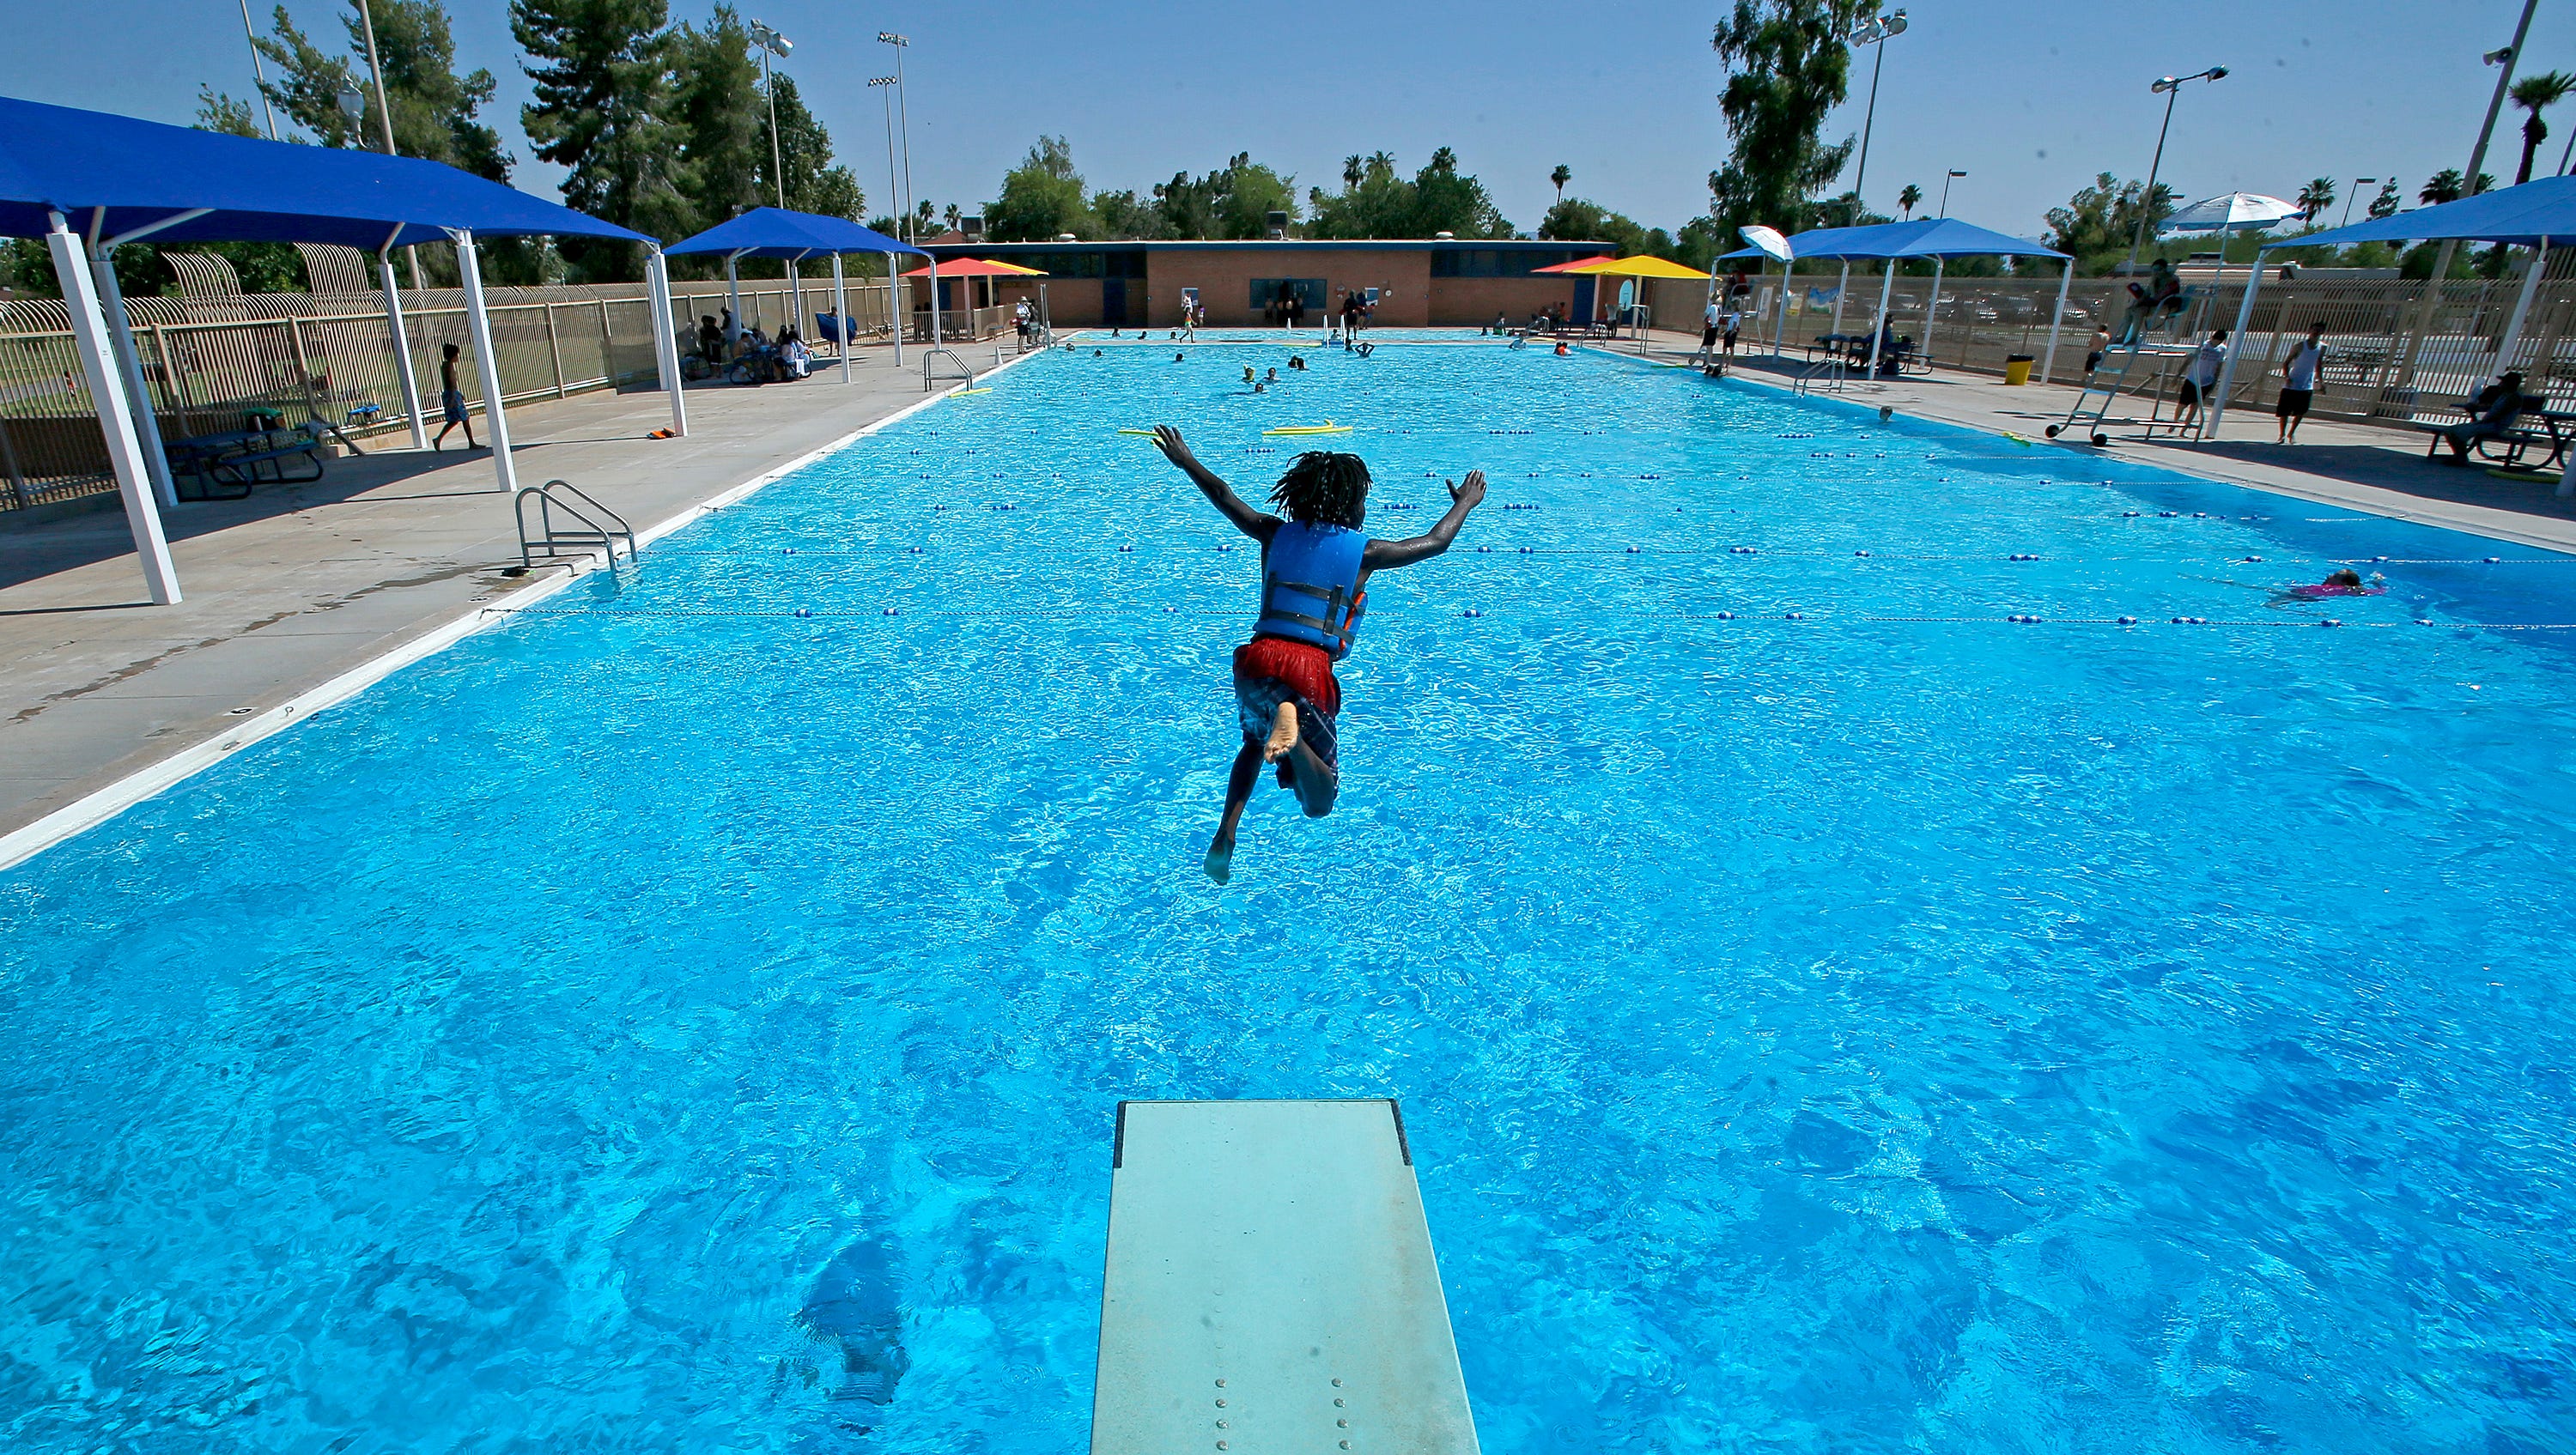 Public pools open in metro Phoenix for summer 2022